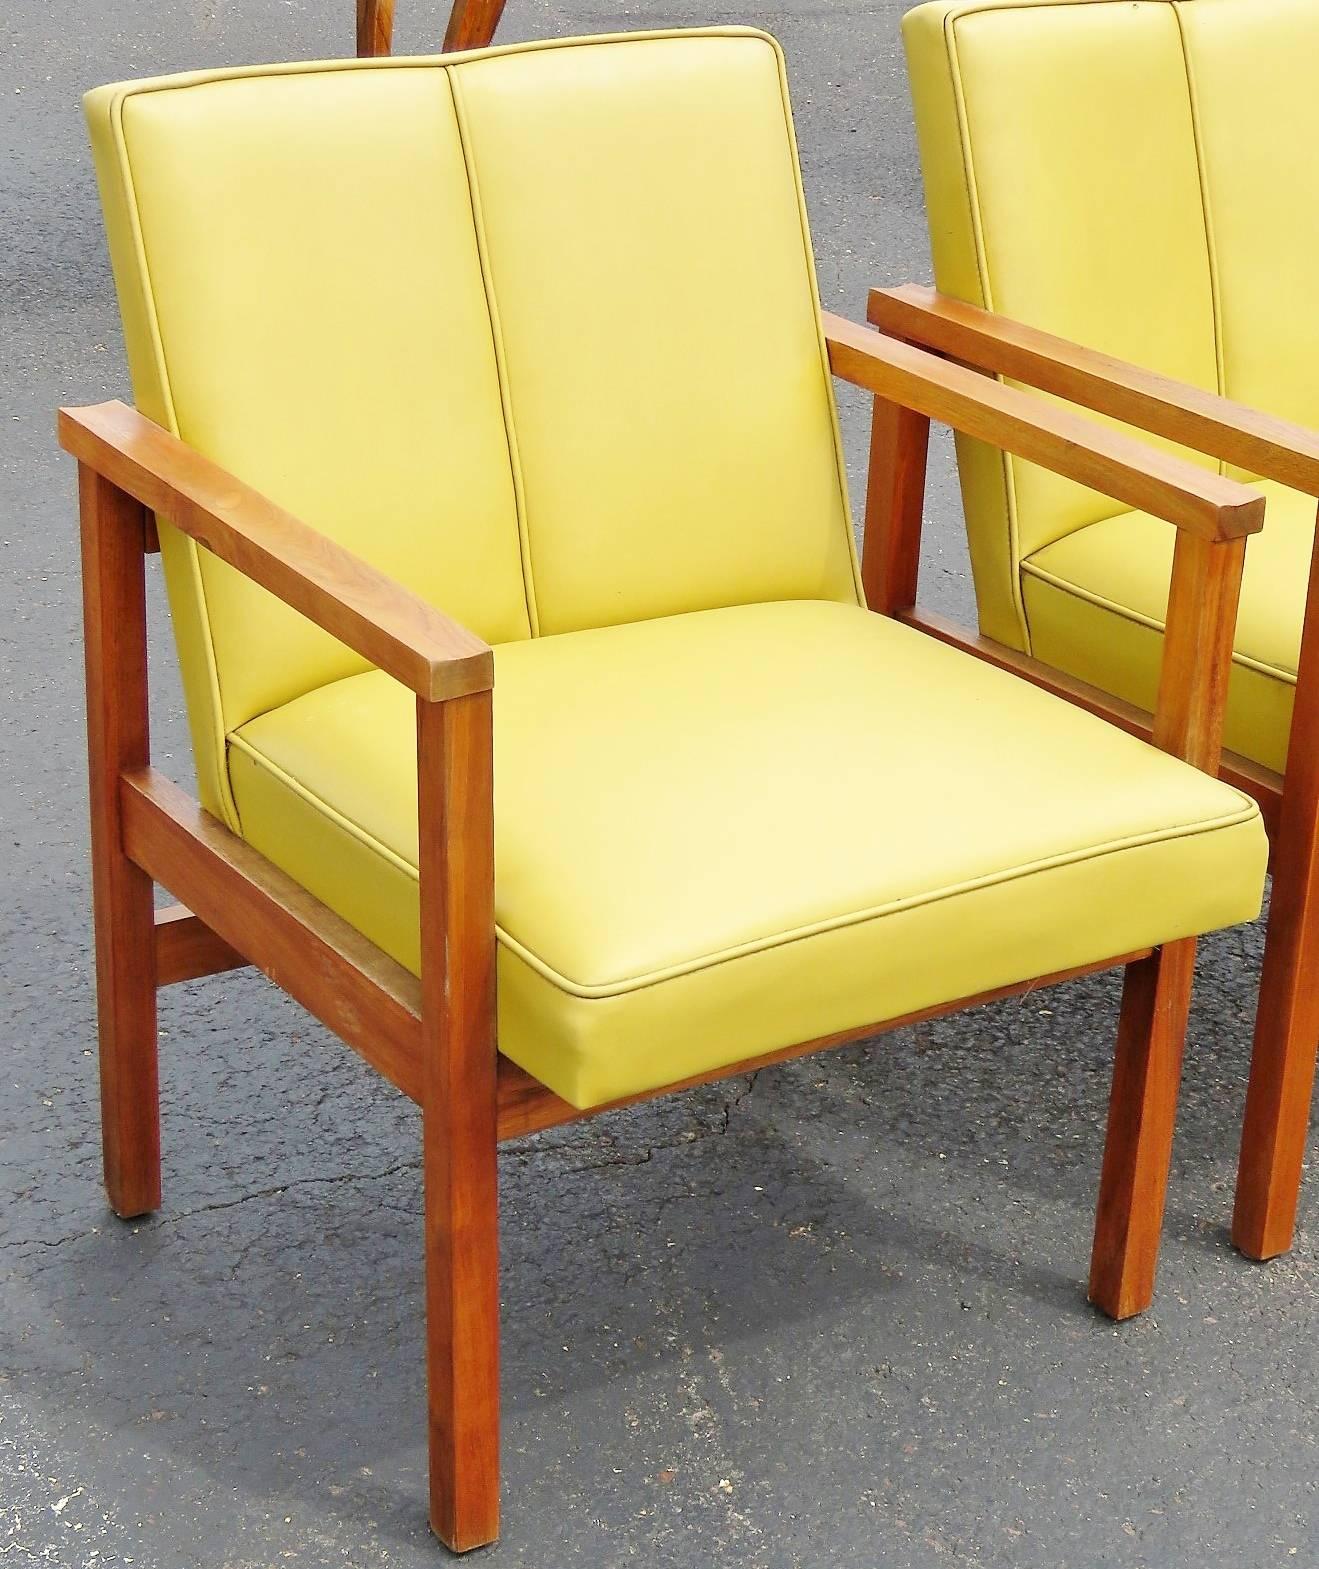 Pair of Danish lounge chairs. Walnut frames. Yellow Naugahyde upholstery.